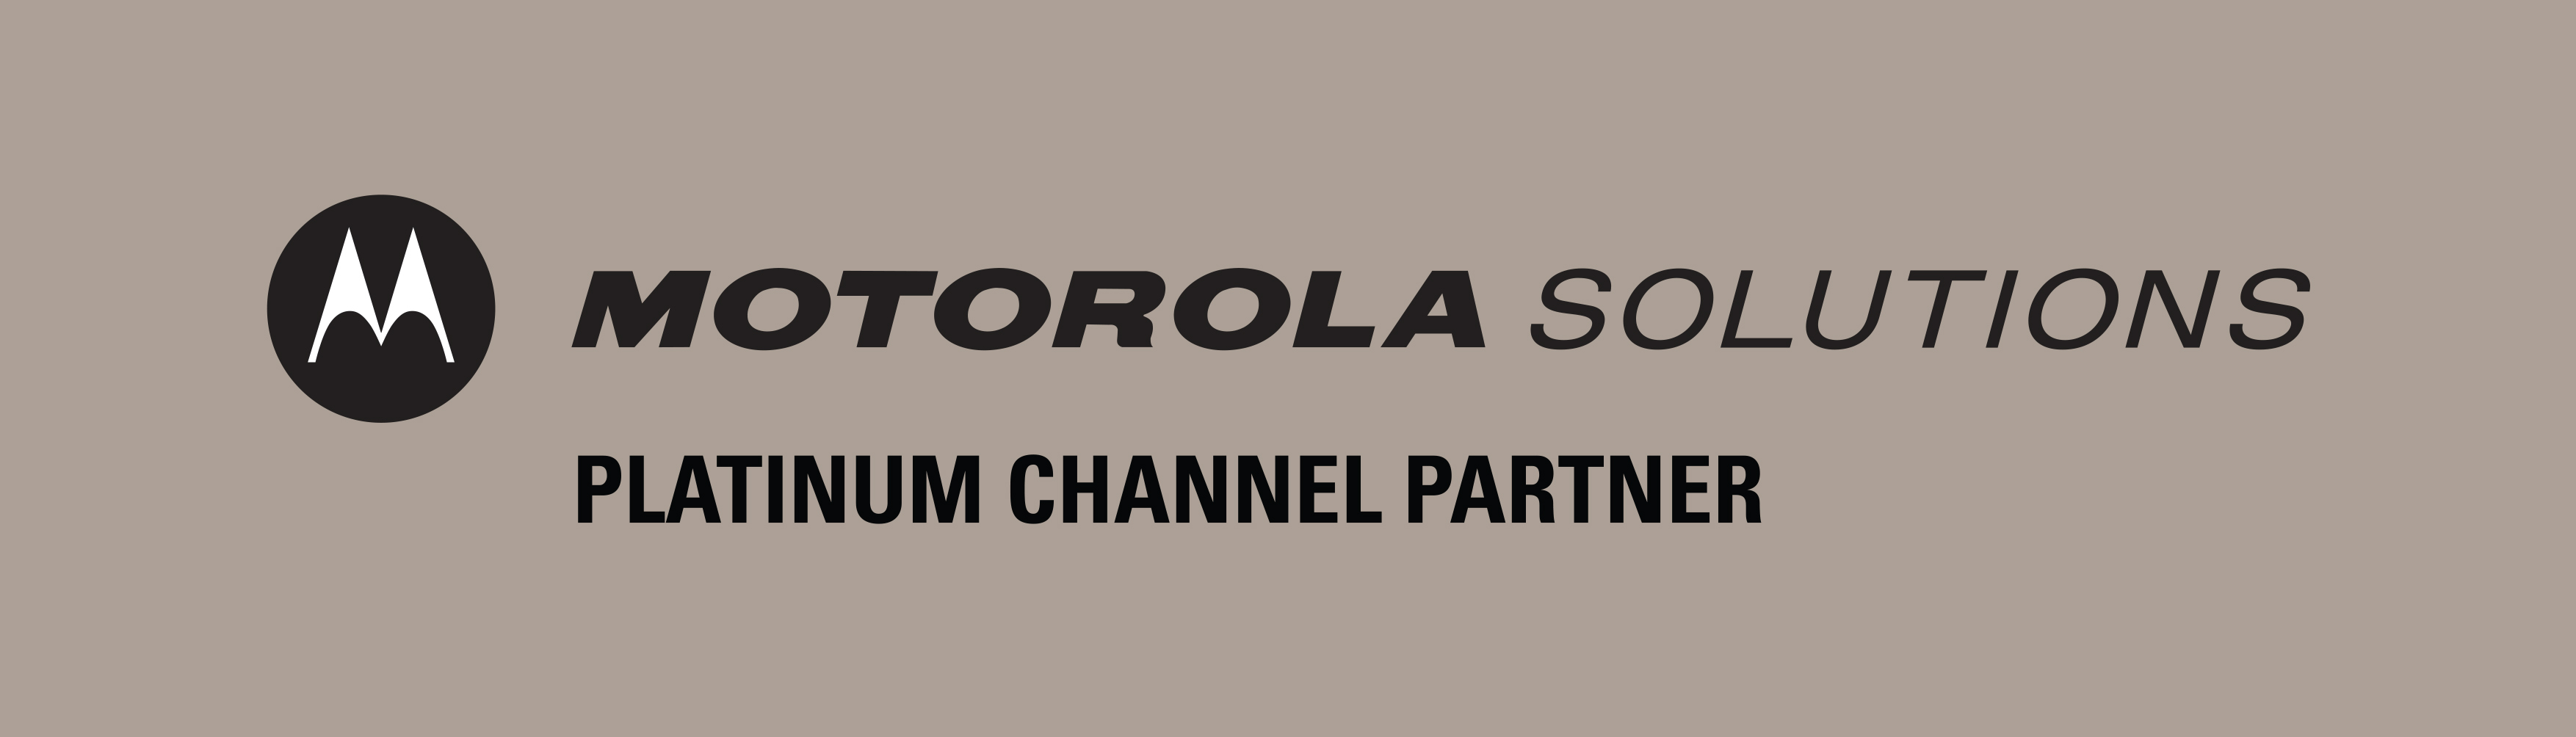 Platinum Channel Partner TechRentals